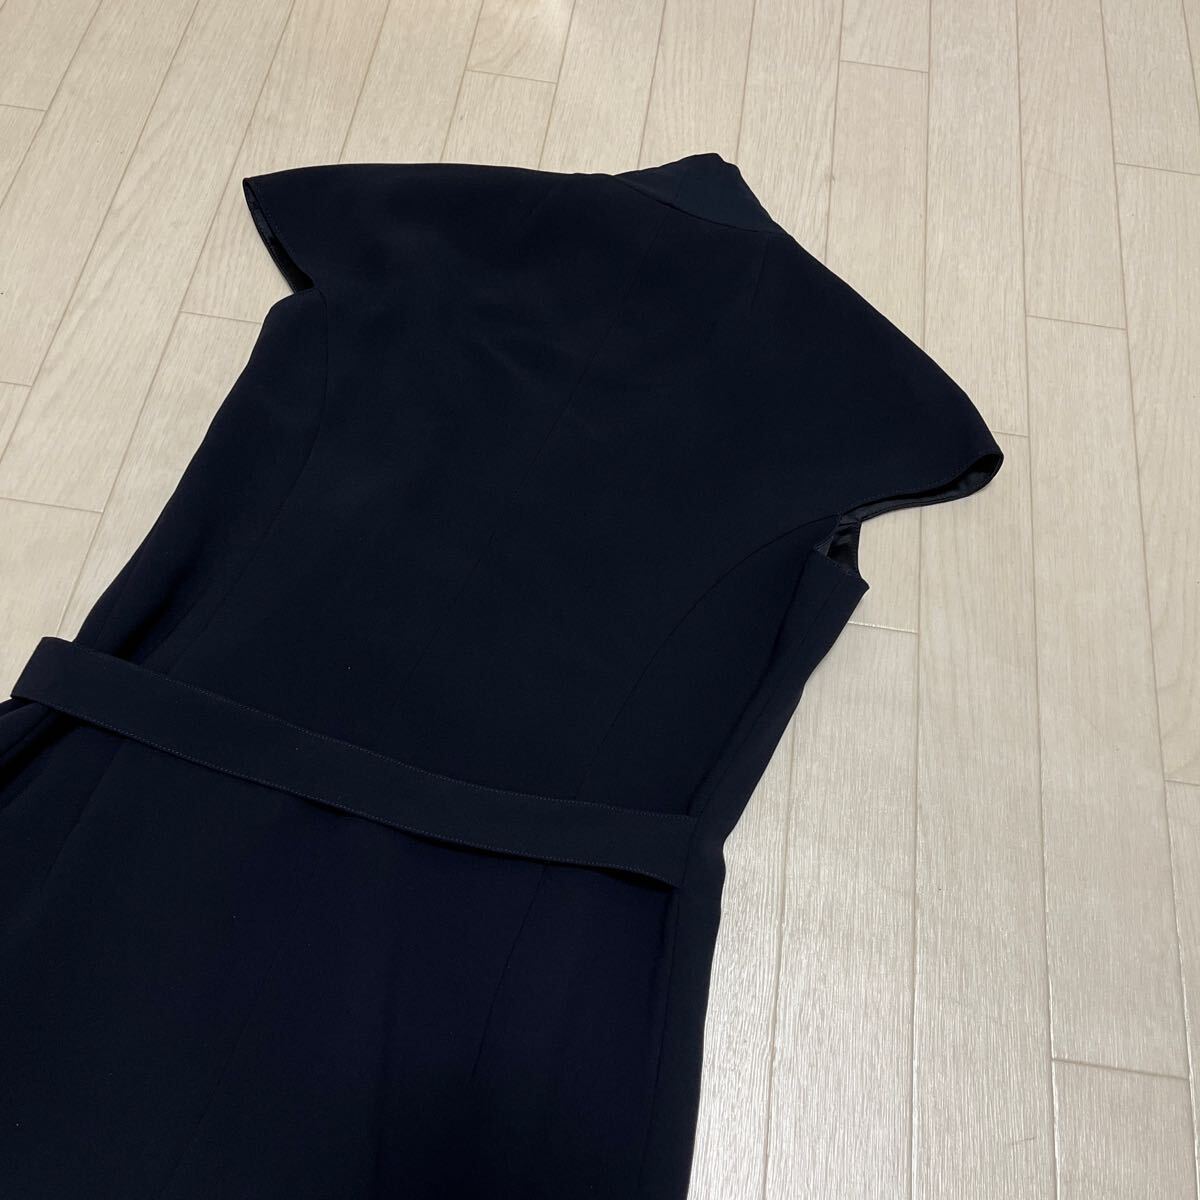  мир 308* miss ashida ошибка asida безрукавка One-piece длинный One-piece 9 темно-синий женский платье 